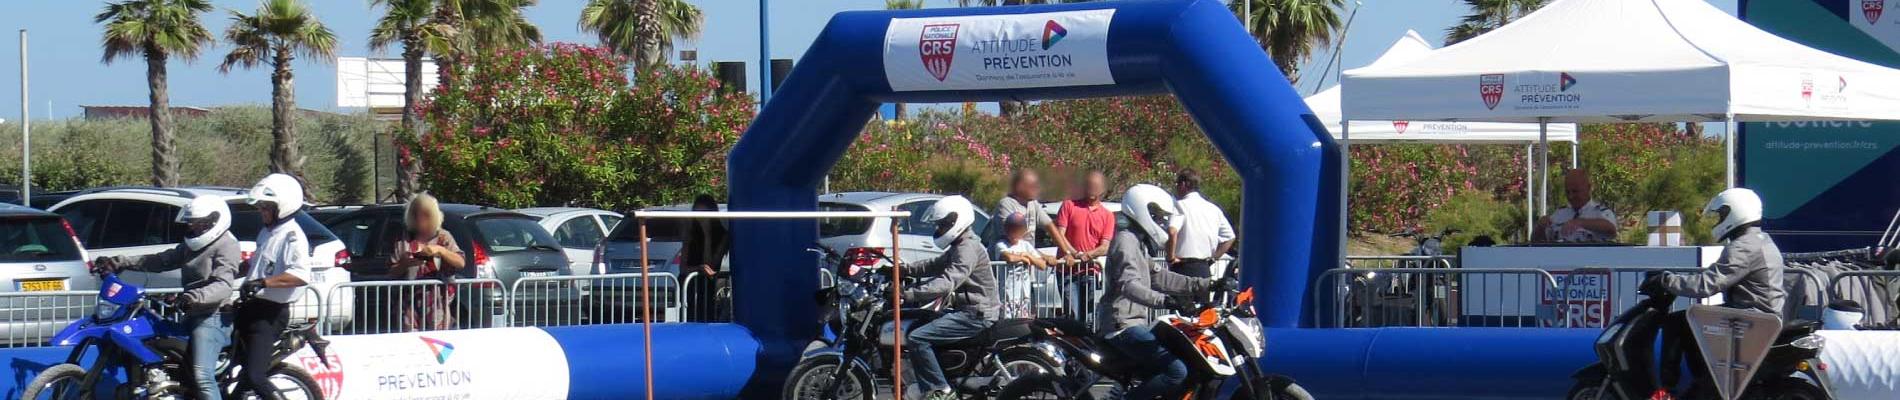 Initiation au deux-roues : les jeunes en piste pour la sécurité à Saint-Pierre-la-Mer (11), du 23 au 26 juillet